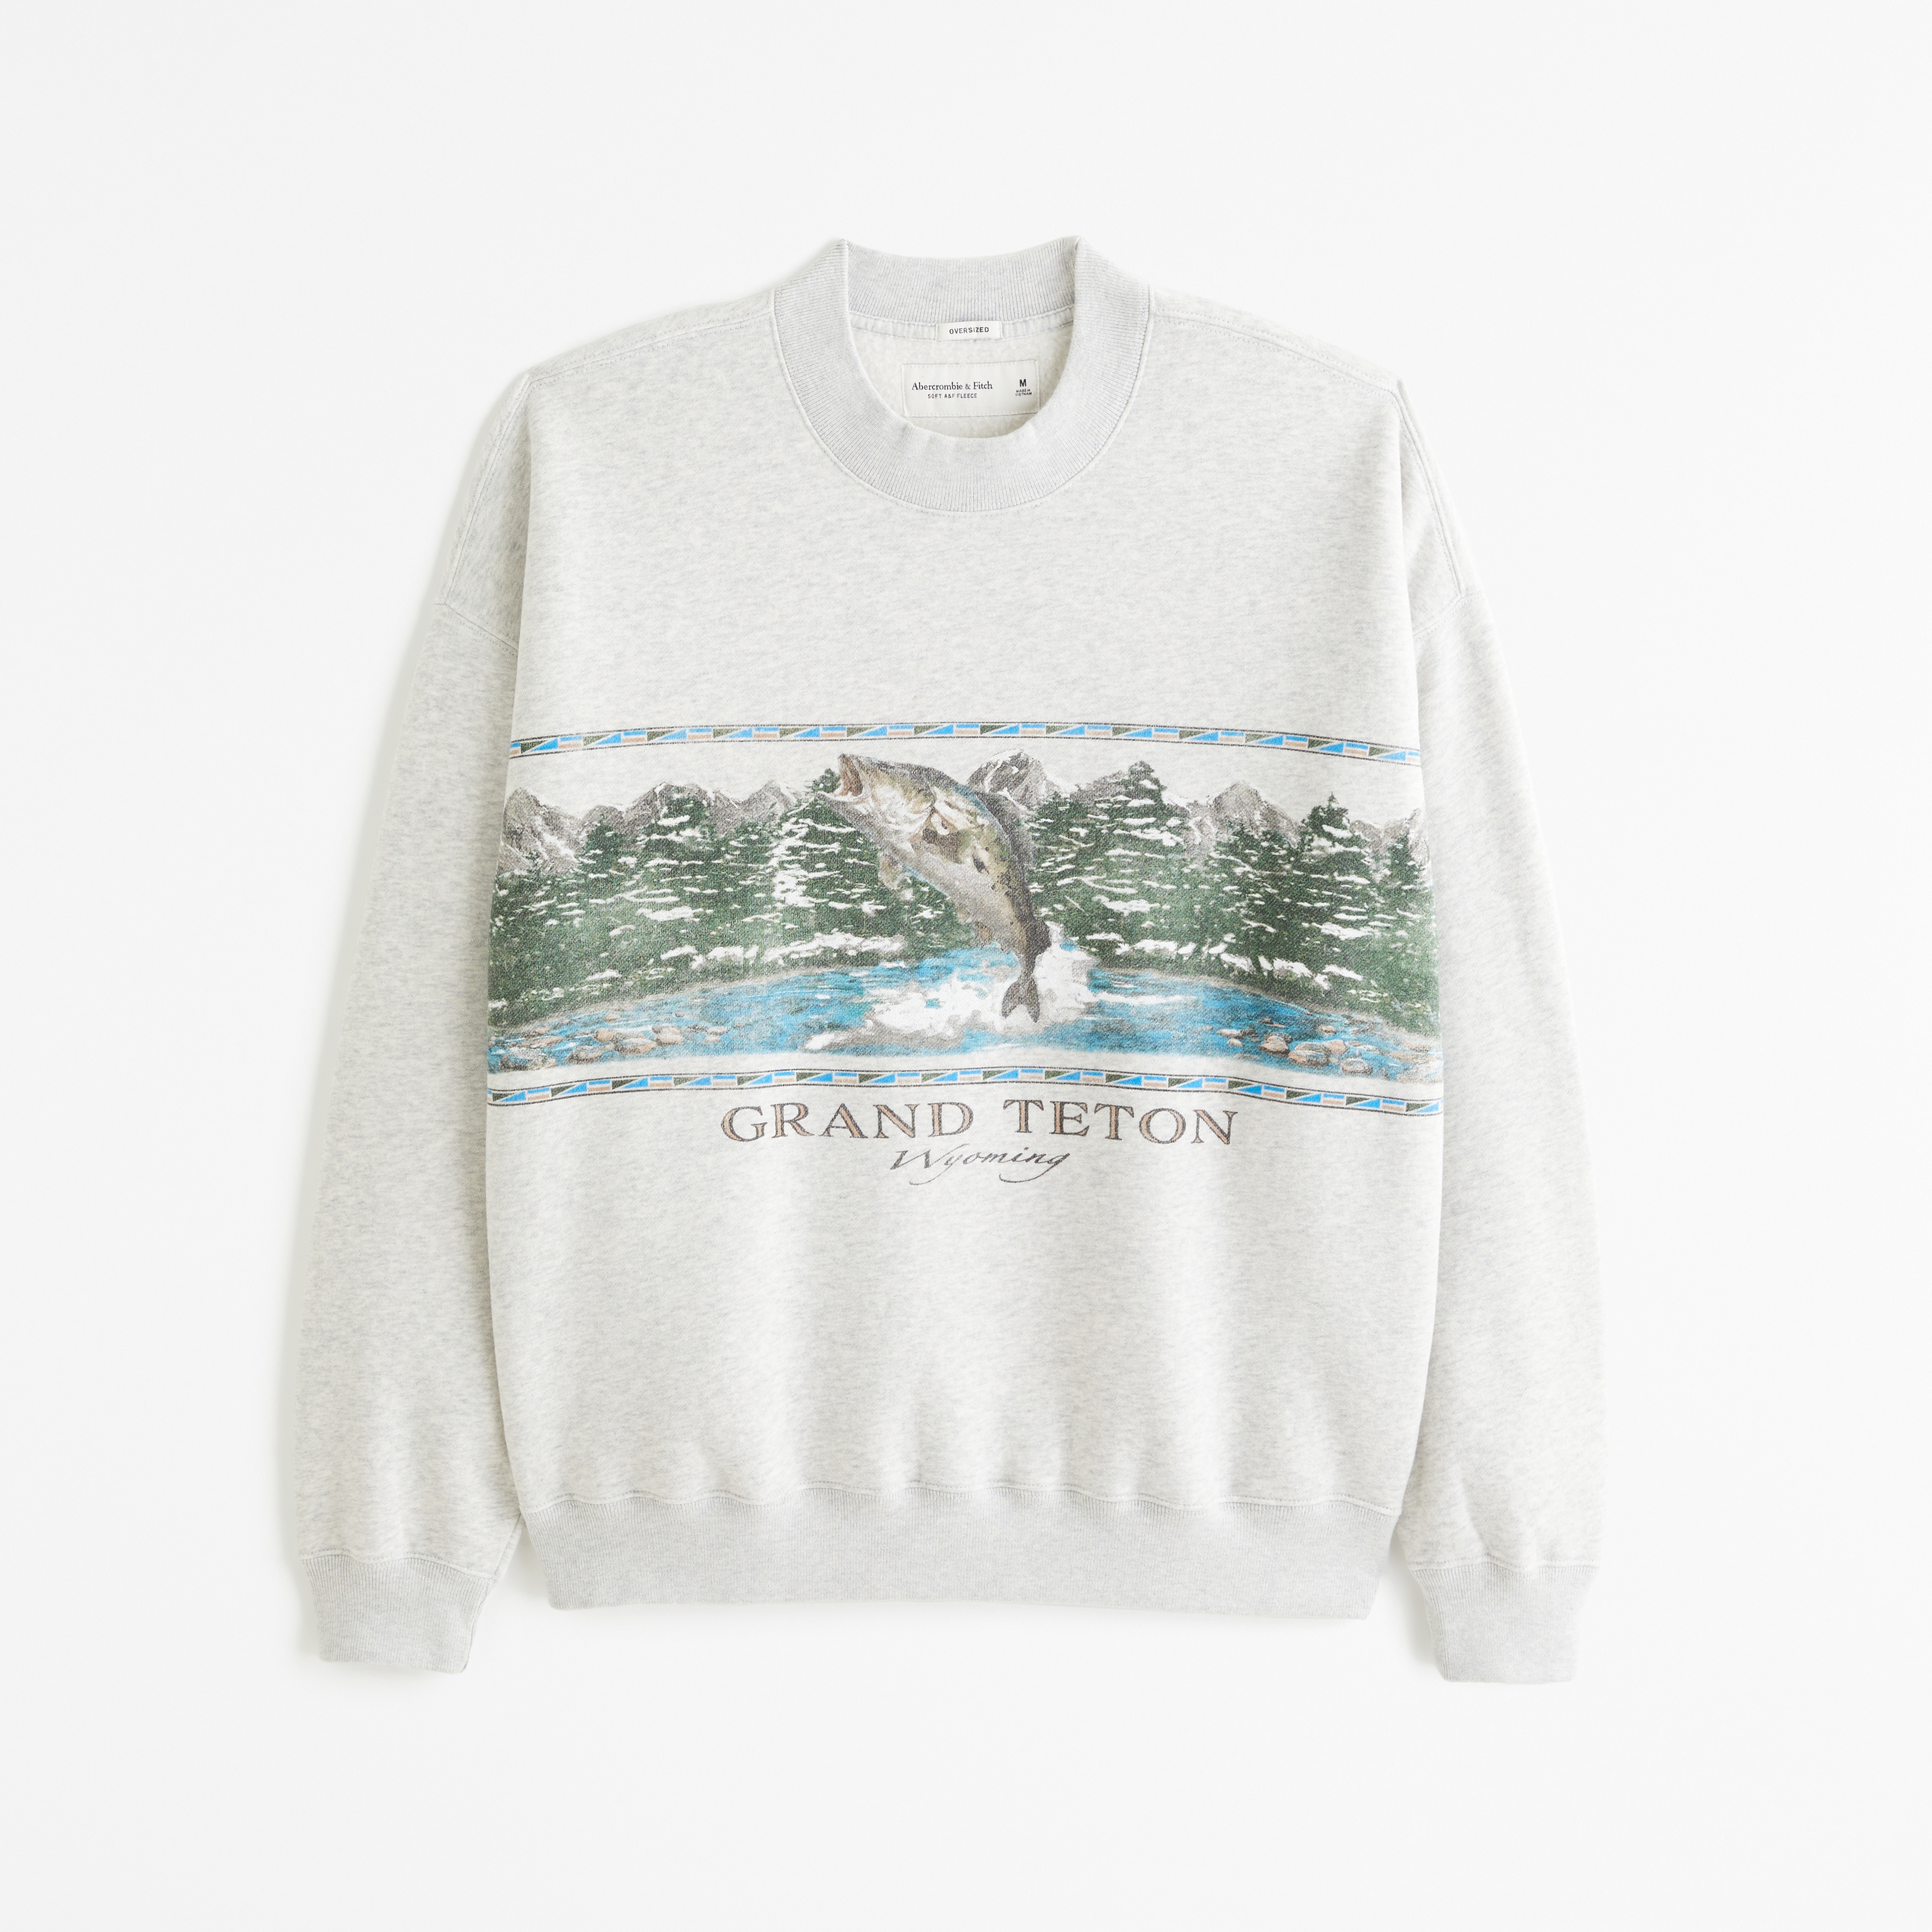 Grand Teton Graphic Crew Sweatshirt